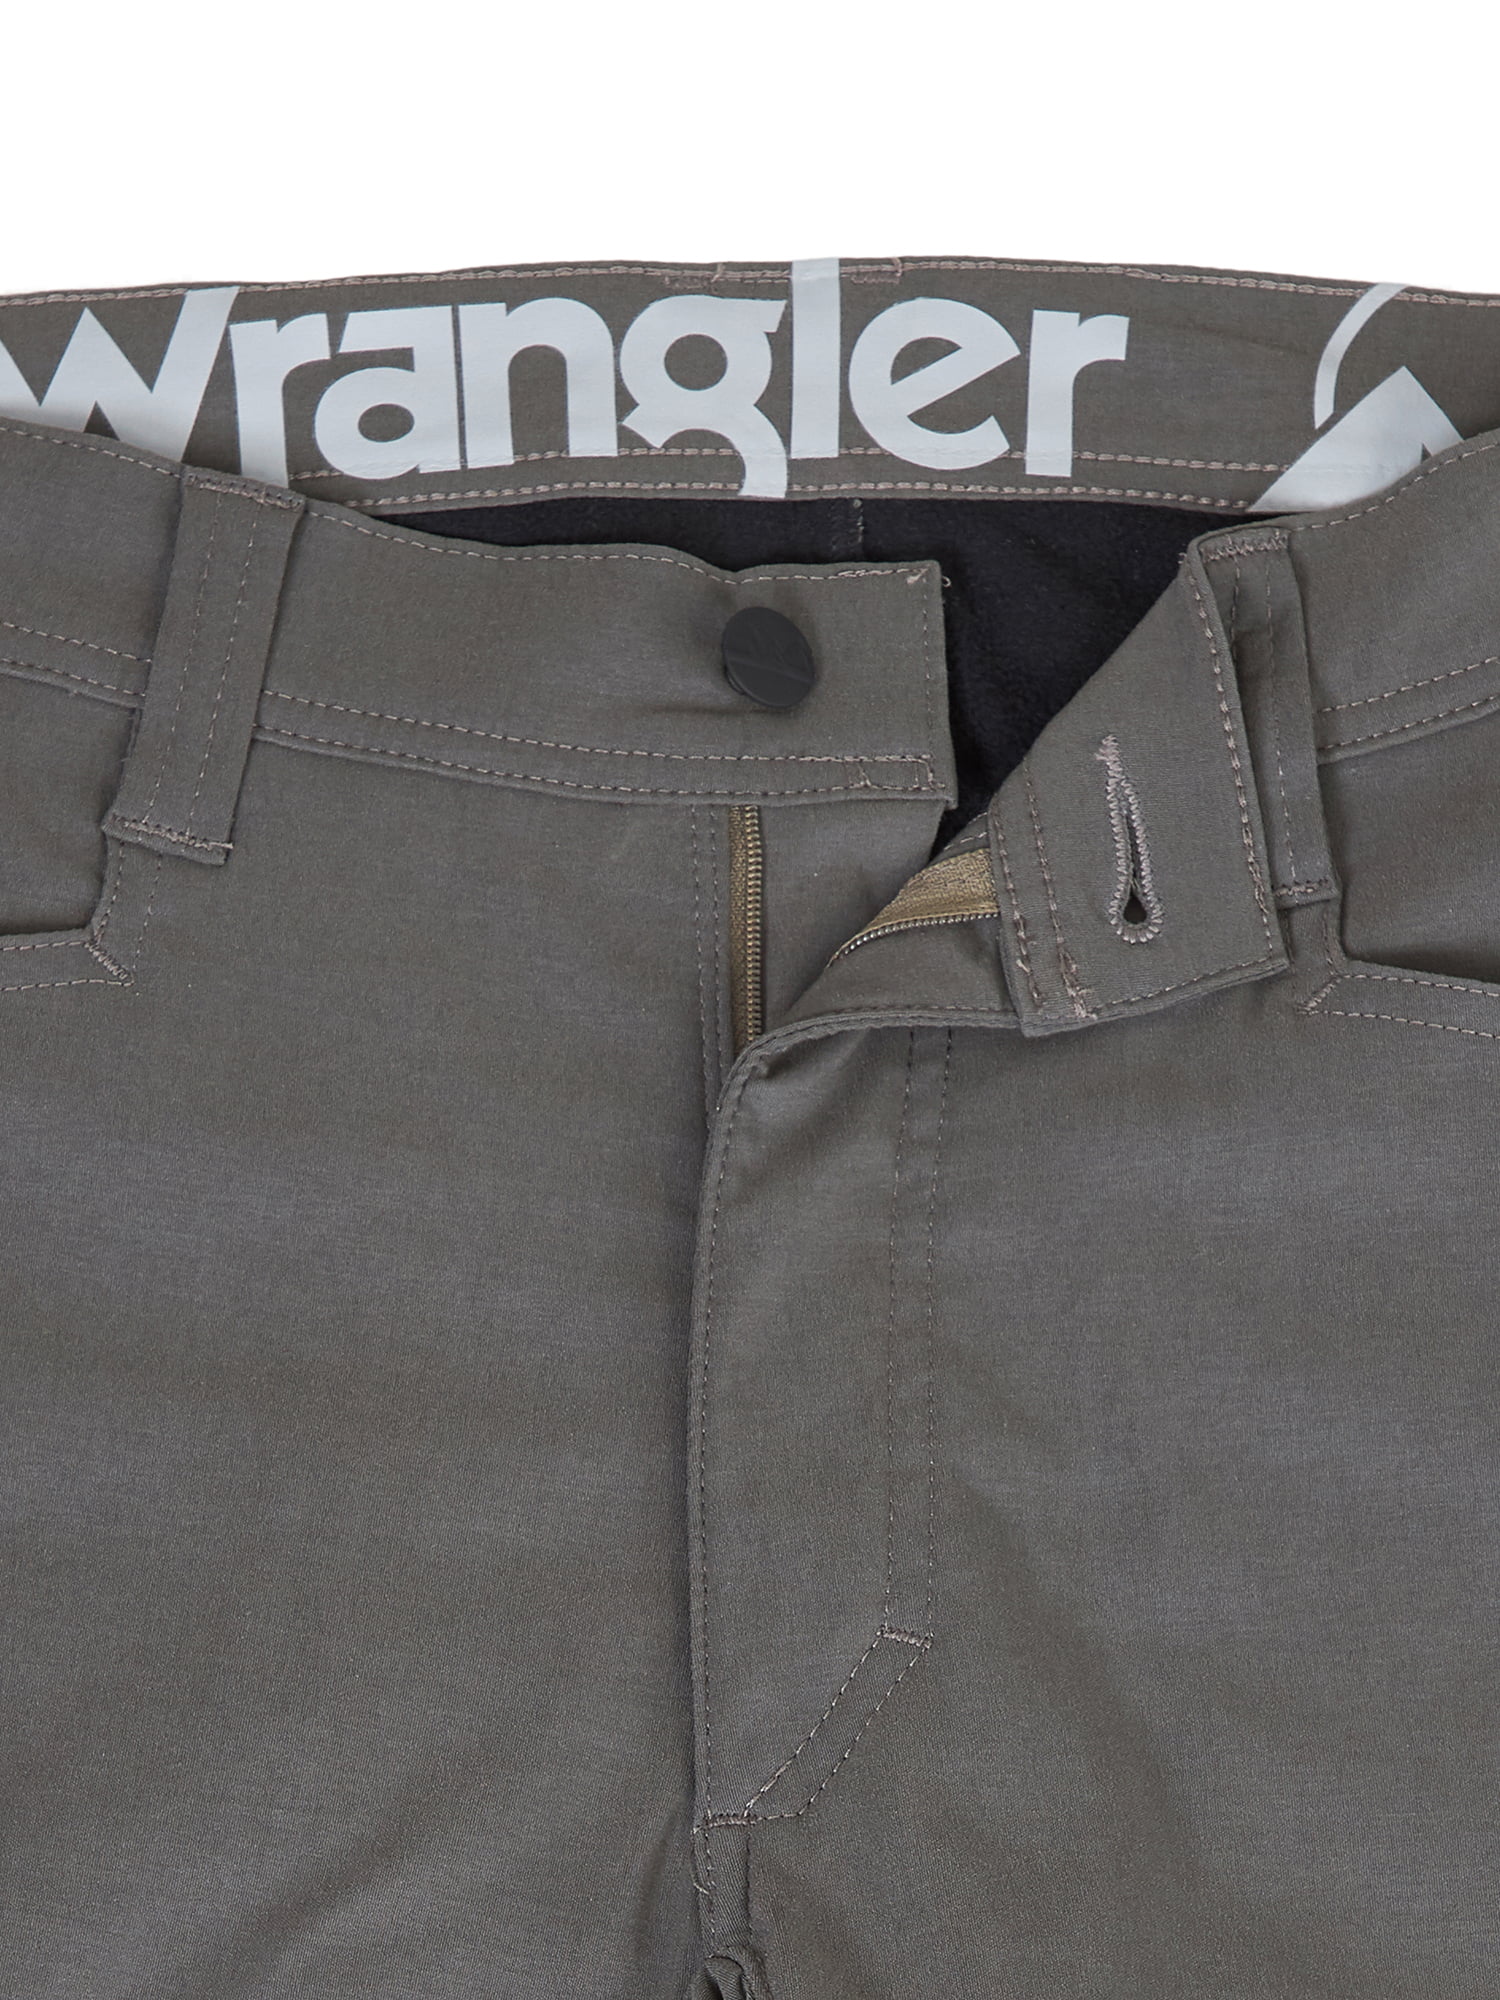 wrangler winter jeans